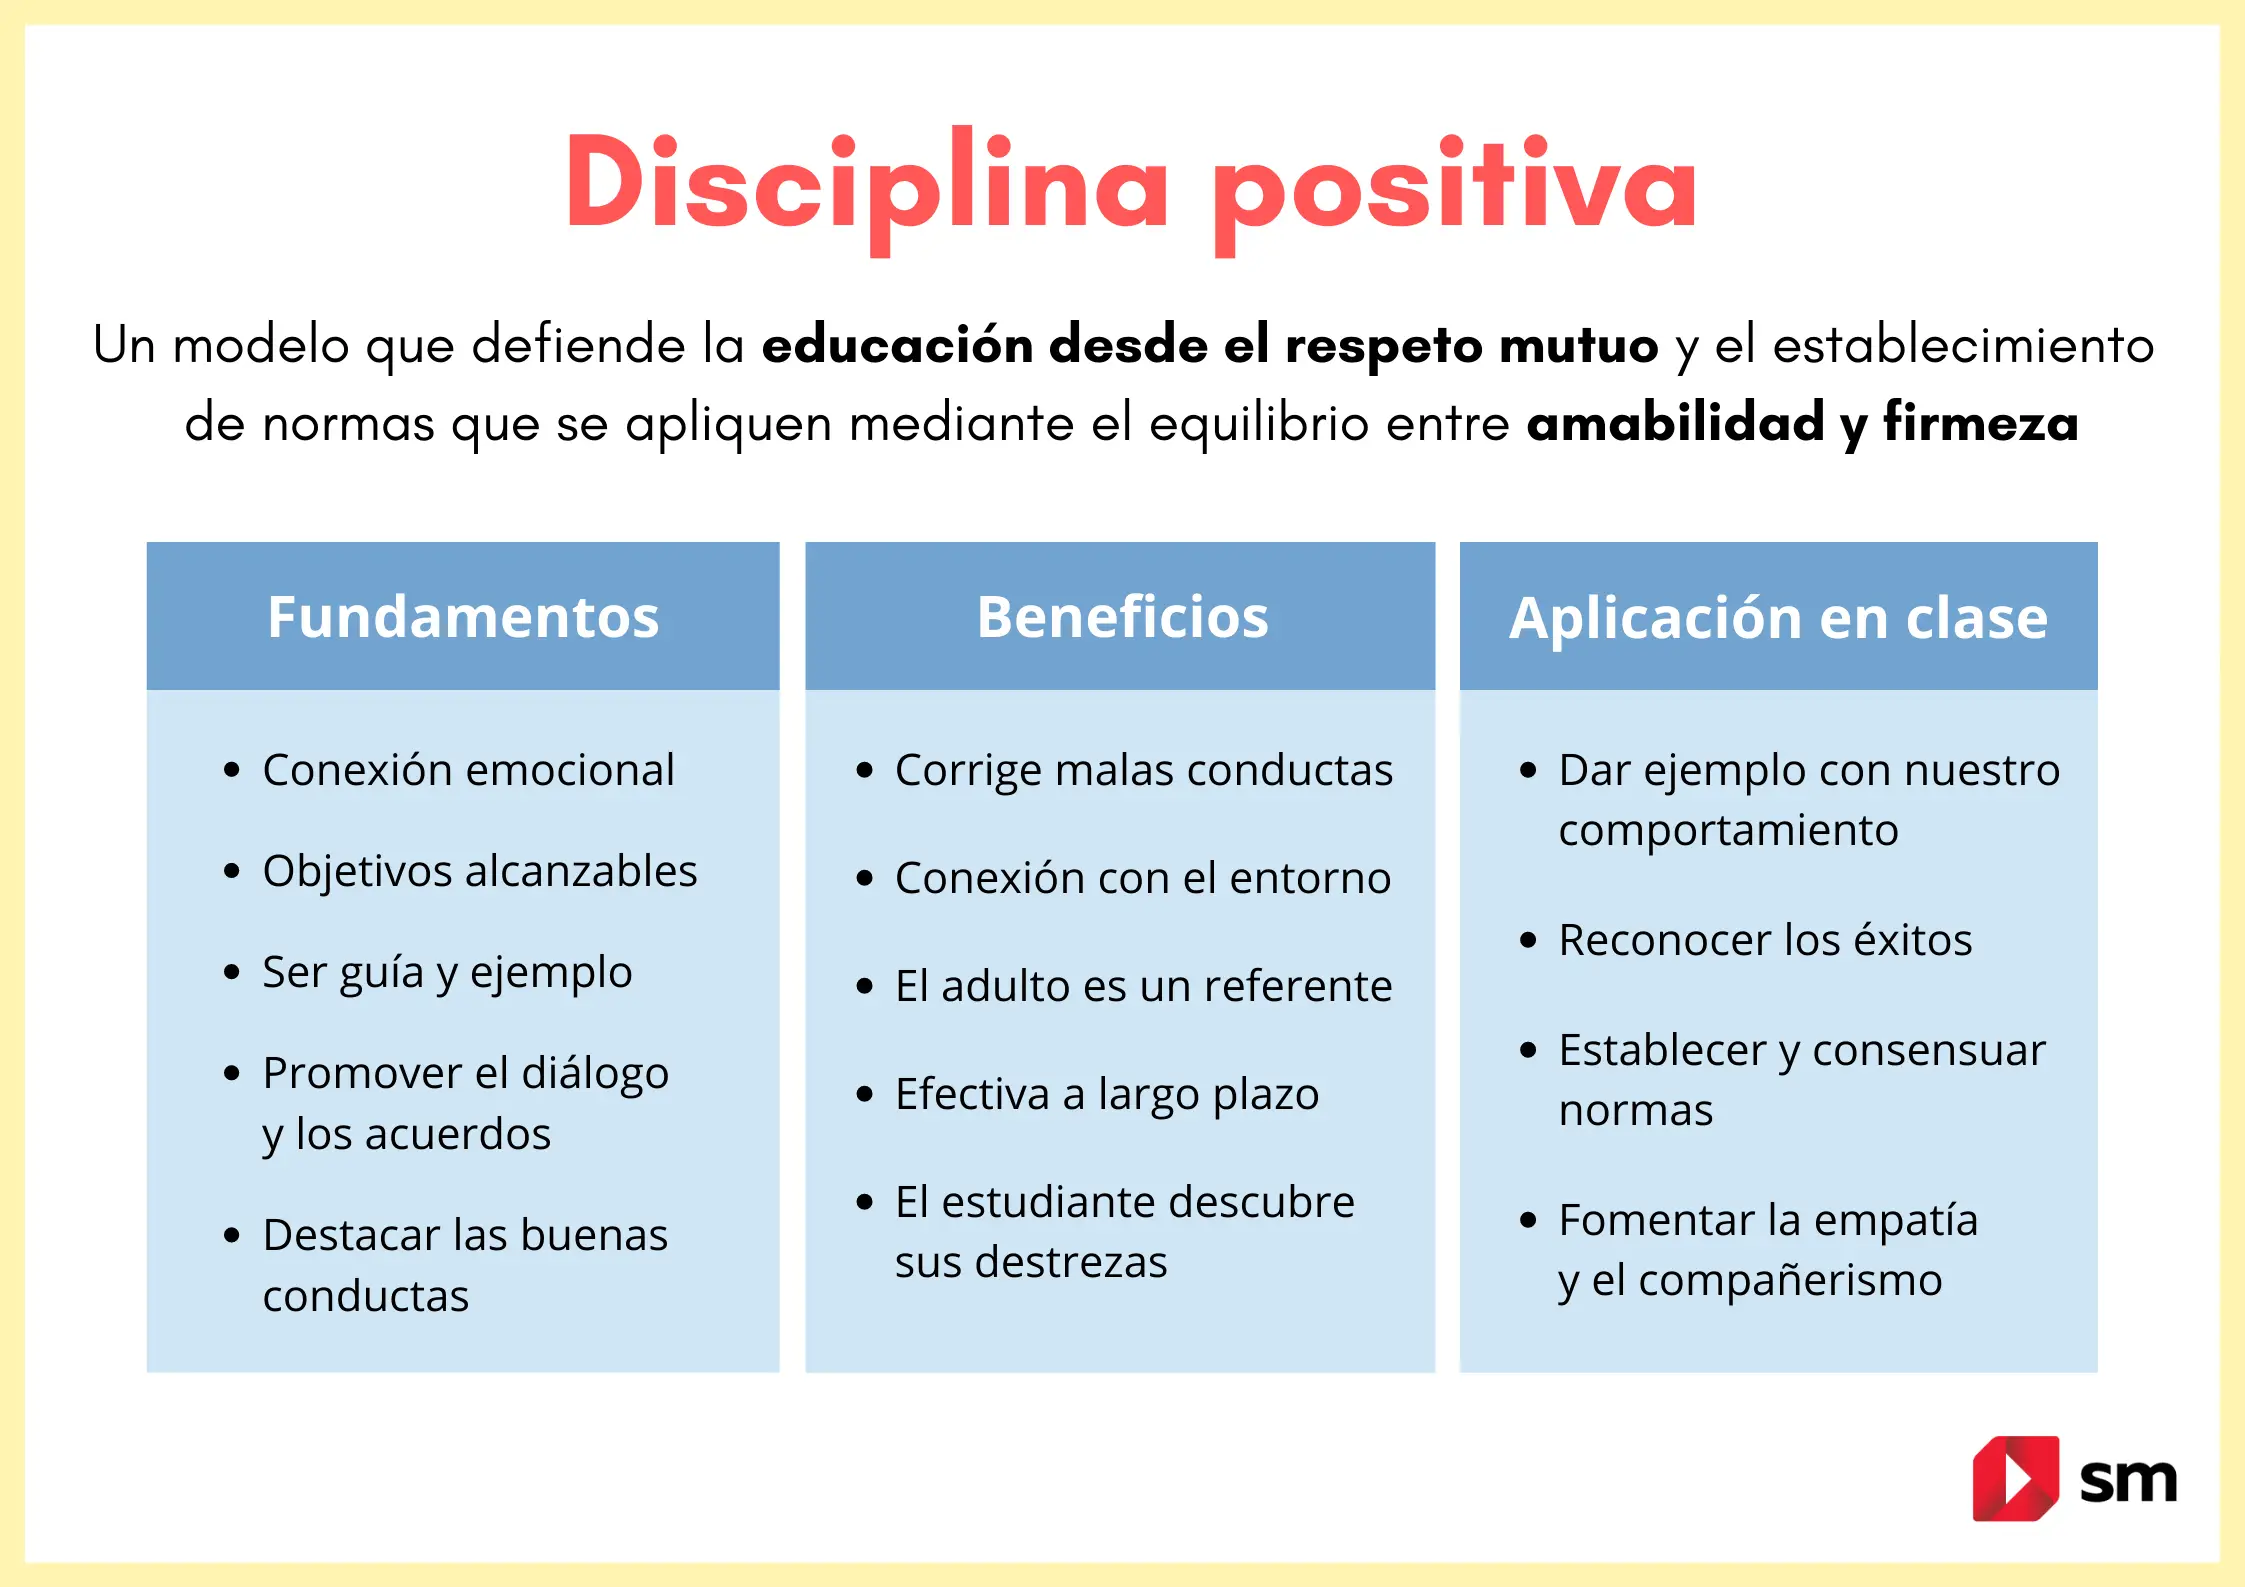 Cómo aplicar la disciplina positiva en el aula